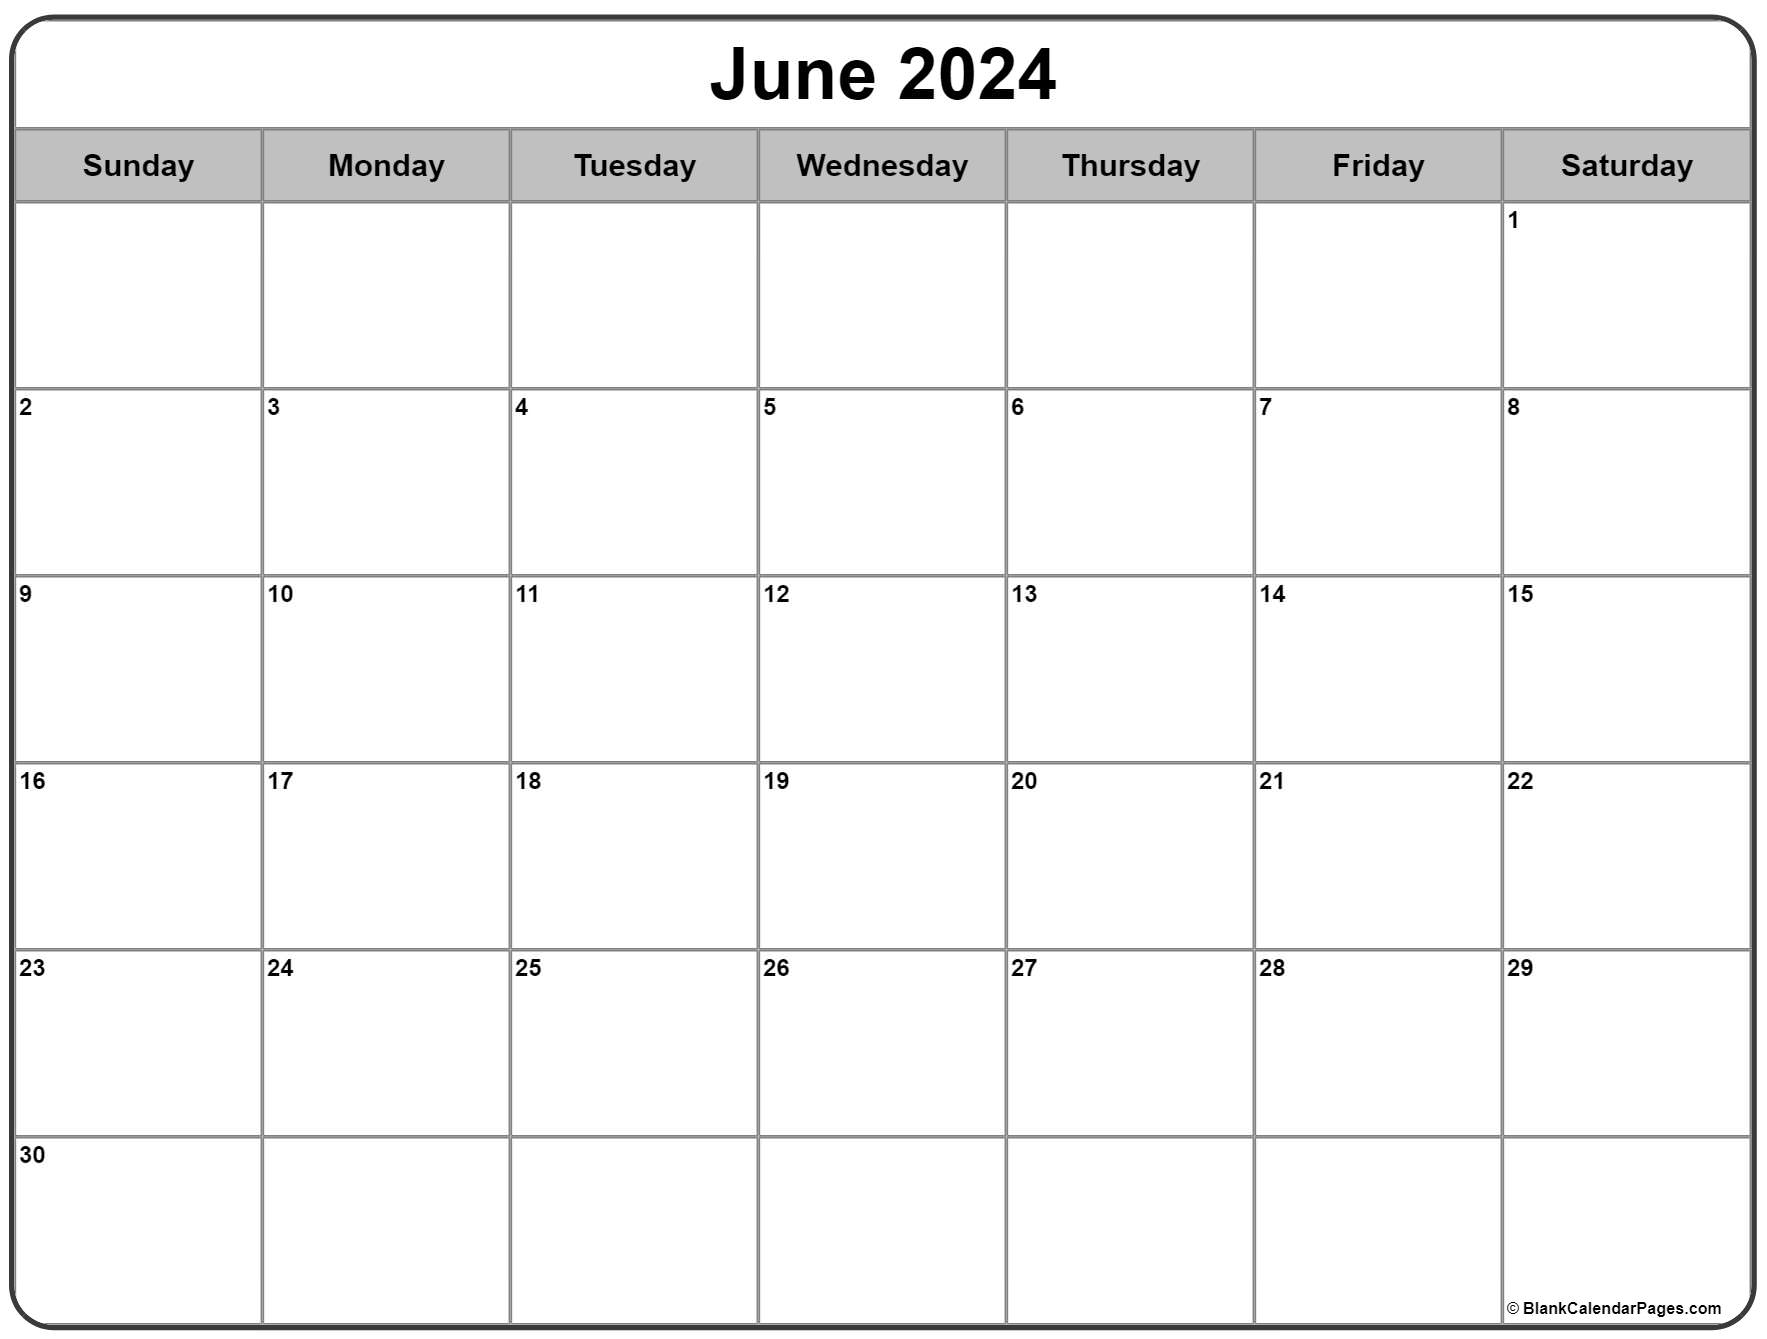 Календарь апрель май июнь 2024 года. Календарь 2024. Календарь май 2024 года. Календарь 2024 для заметок. Календарь 2024 / Calendar 2024.